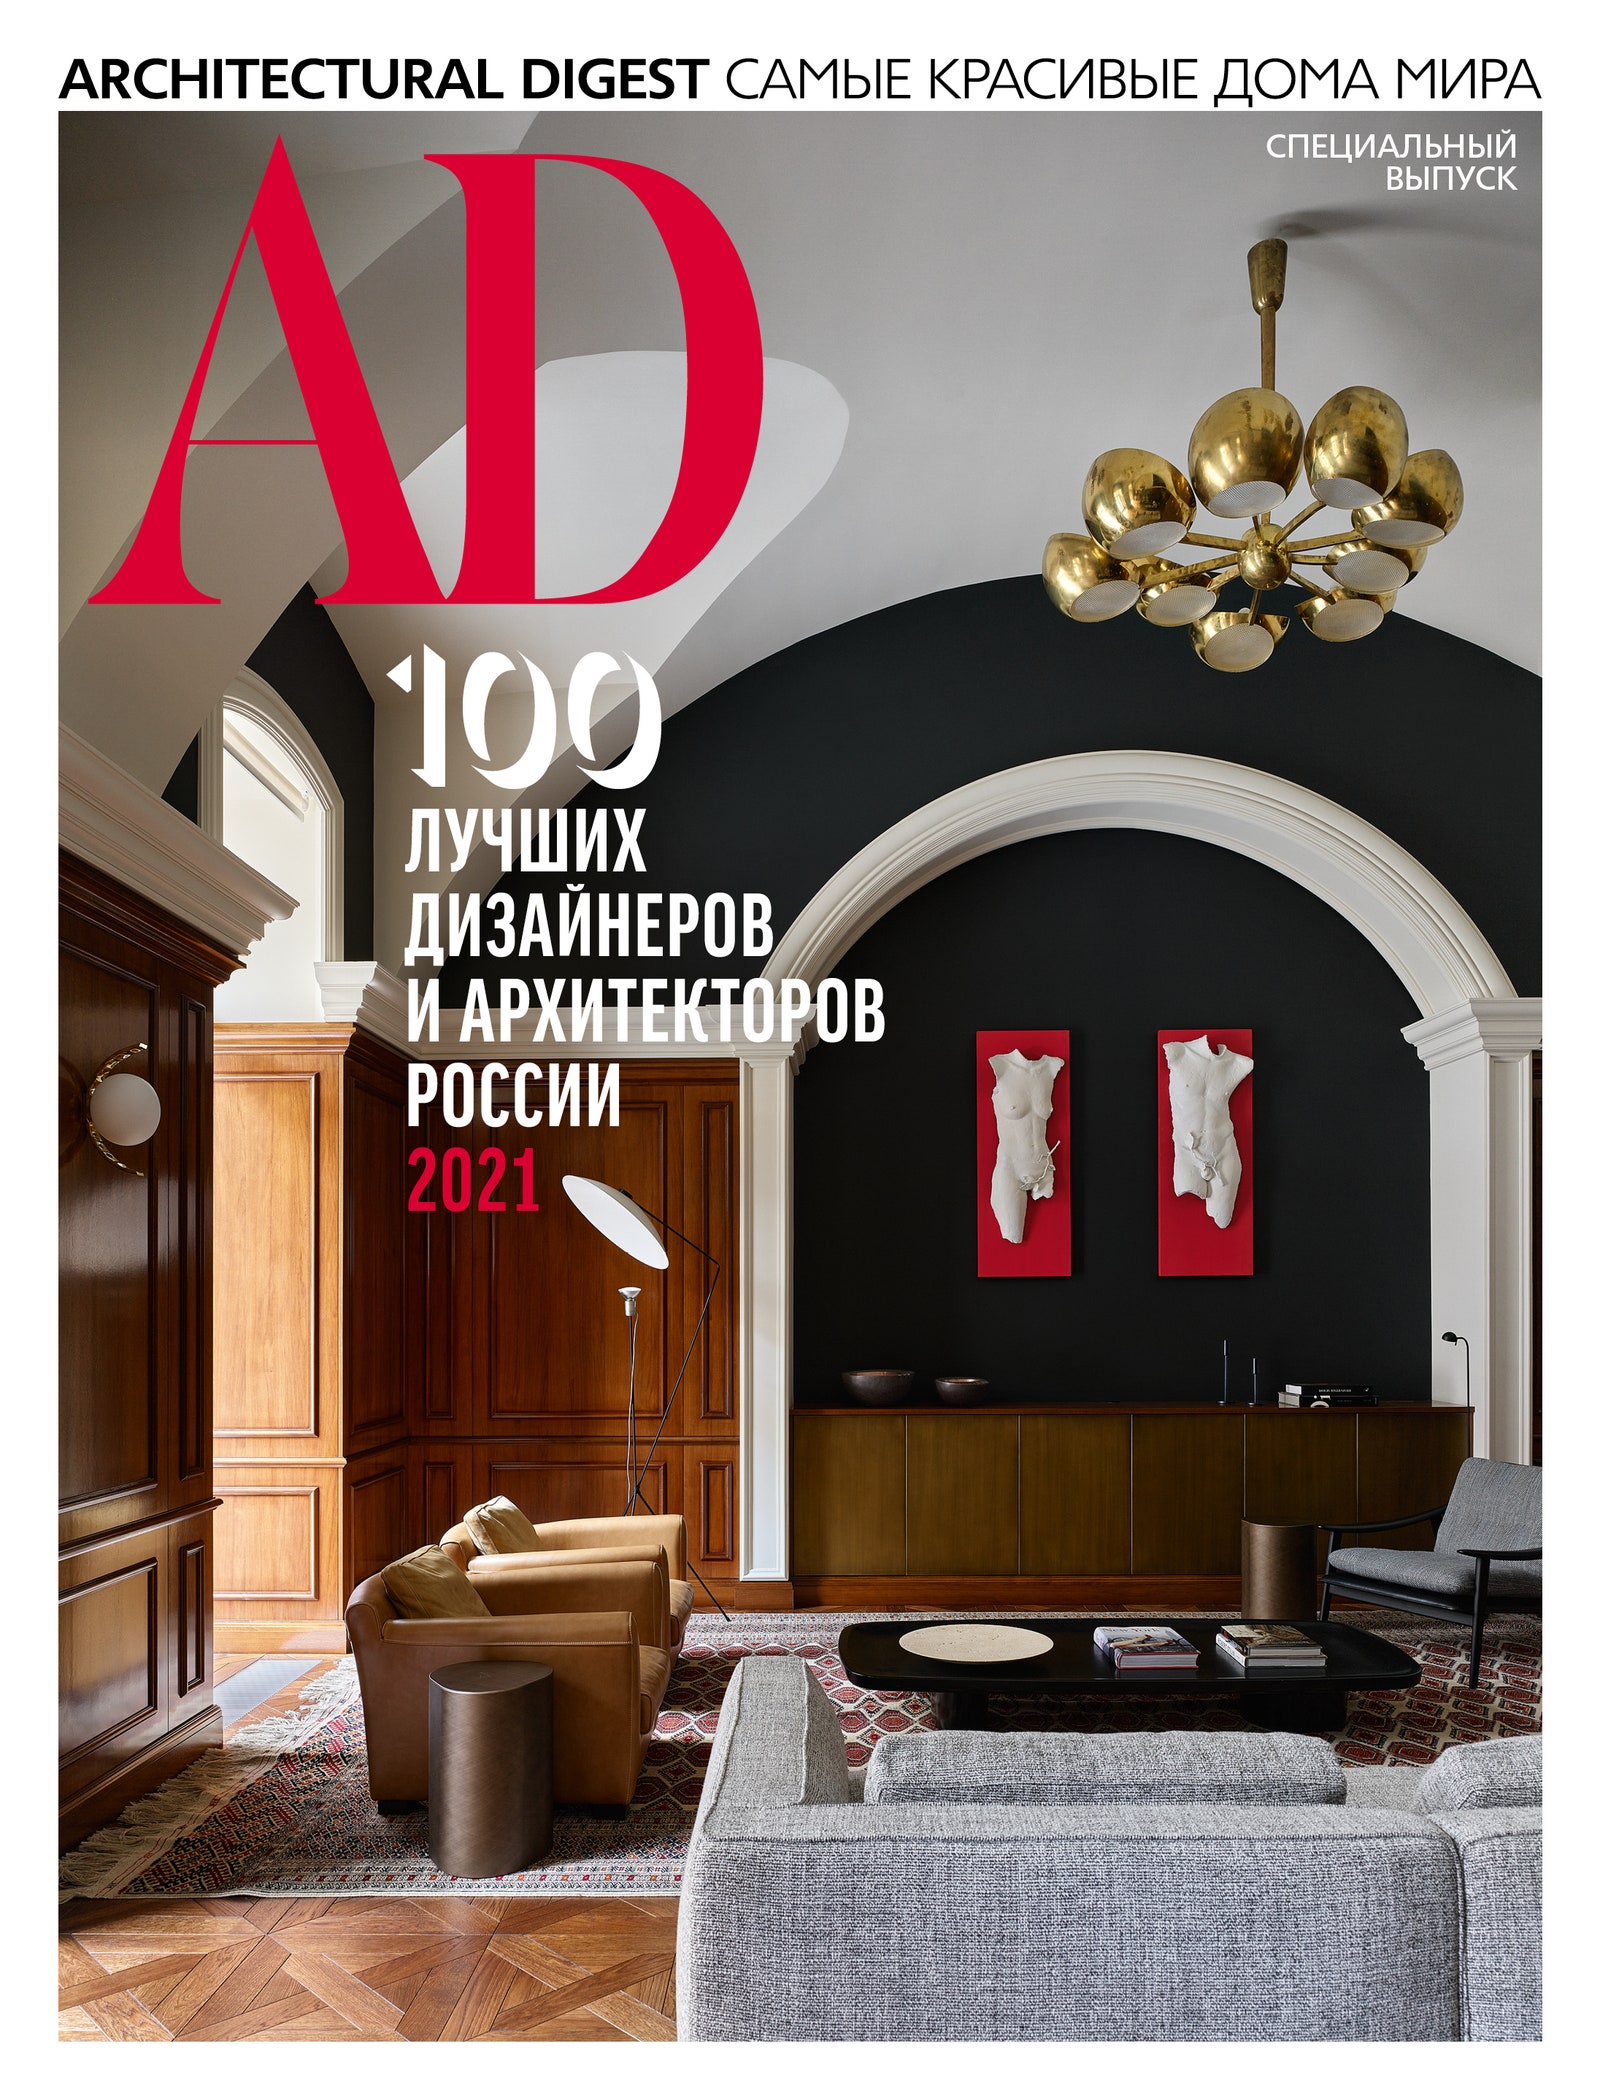 Анастасия Ромашкевич 5 фактов о специальном выпуск AD “100 лучших дизайнеров и архитекторов России”